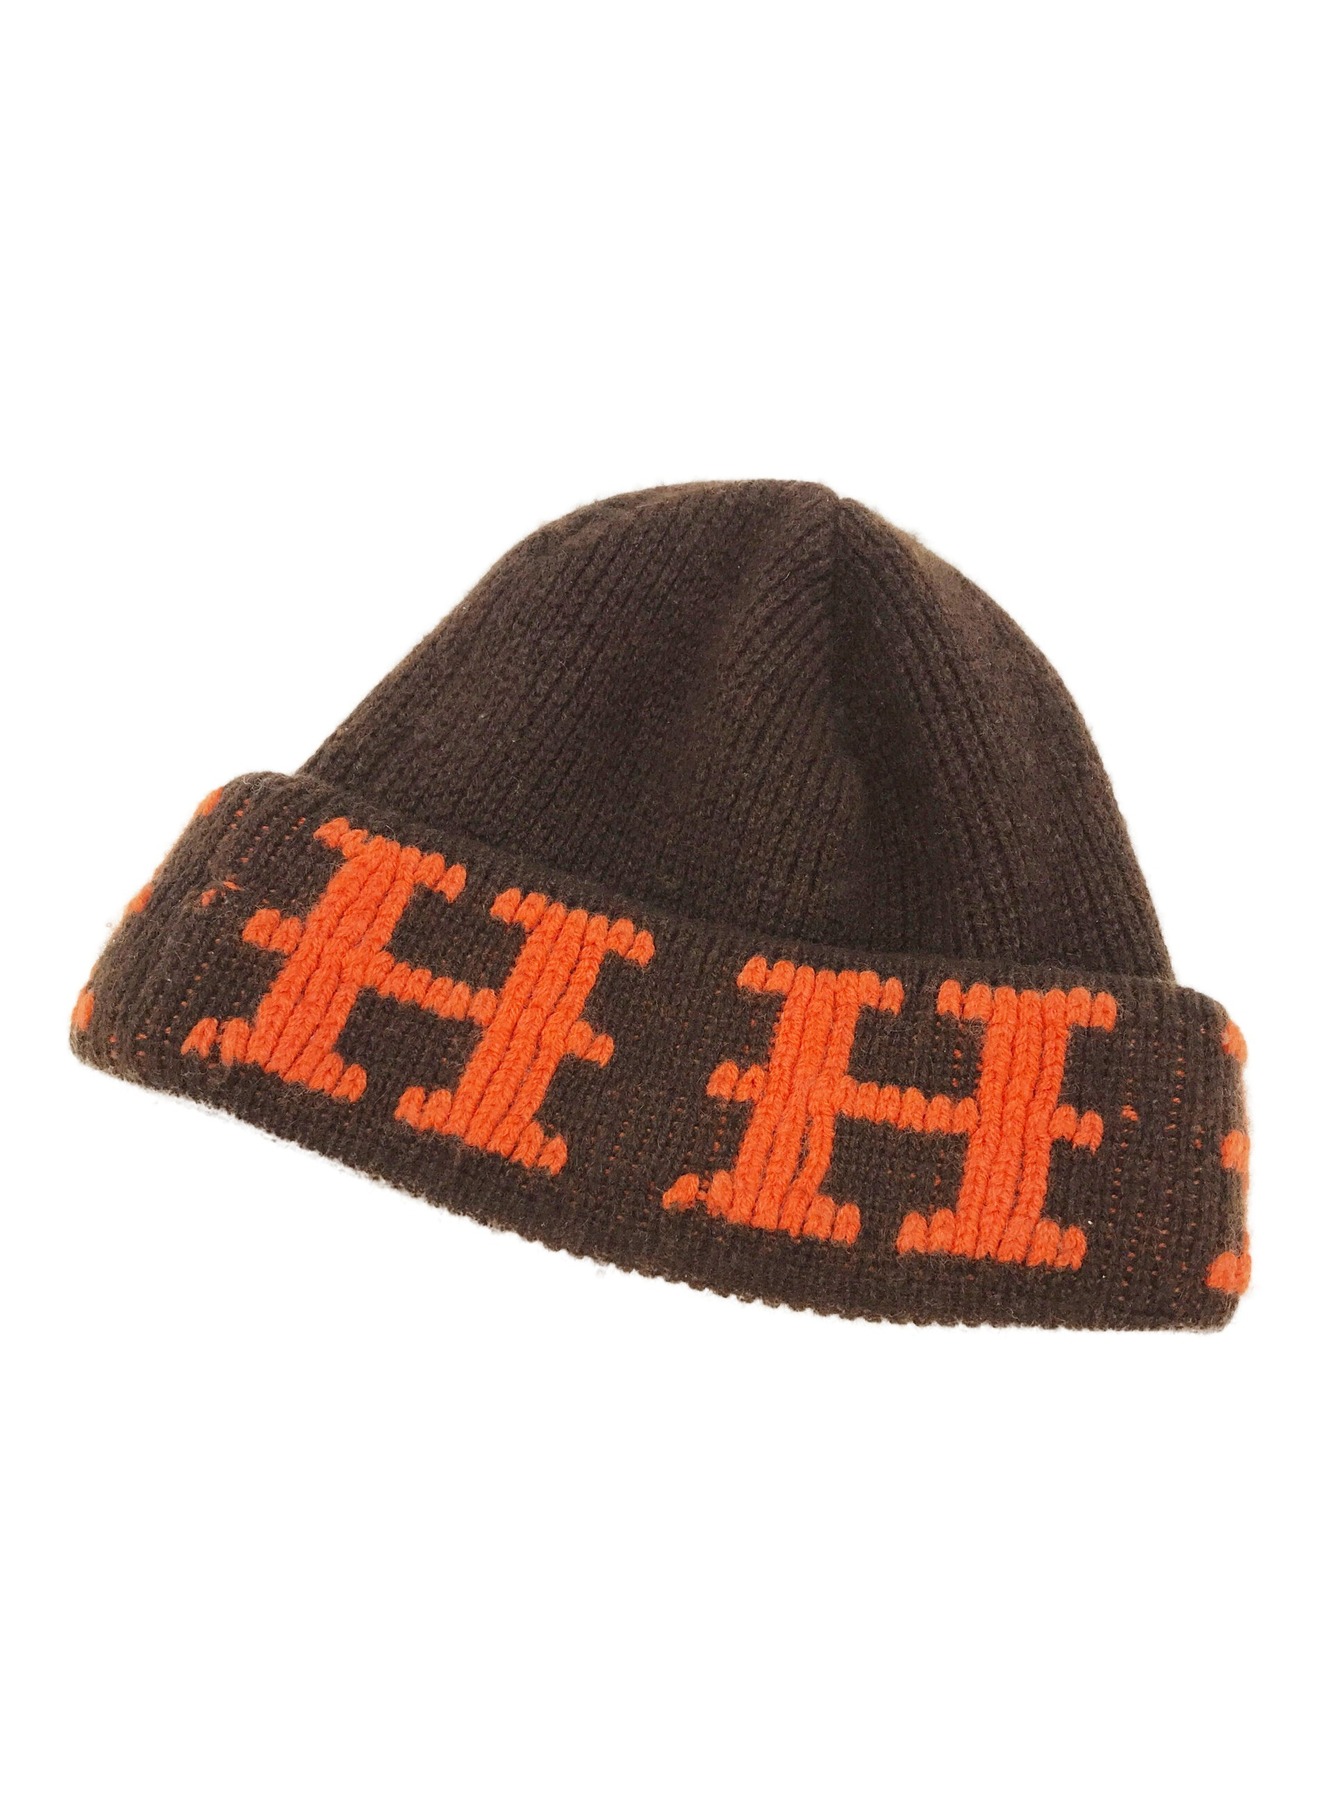 エルメス Hロゴ ビーニー ニットキャップ 帽子 ニット帽 ブラウン×オレンジ約51cm